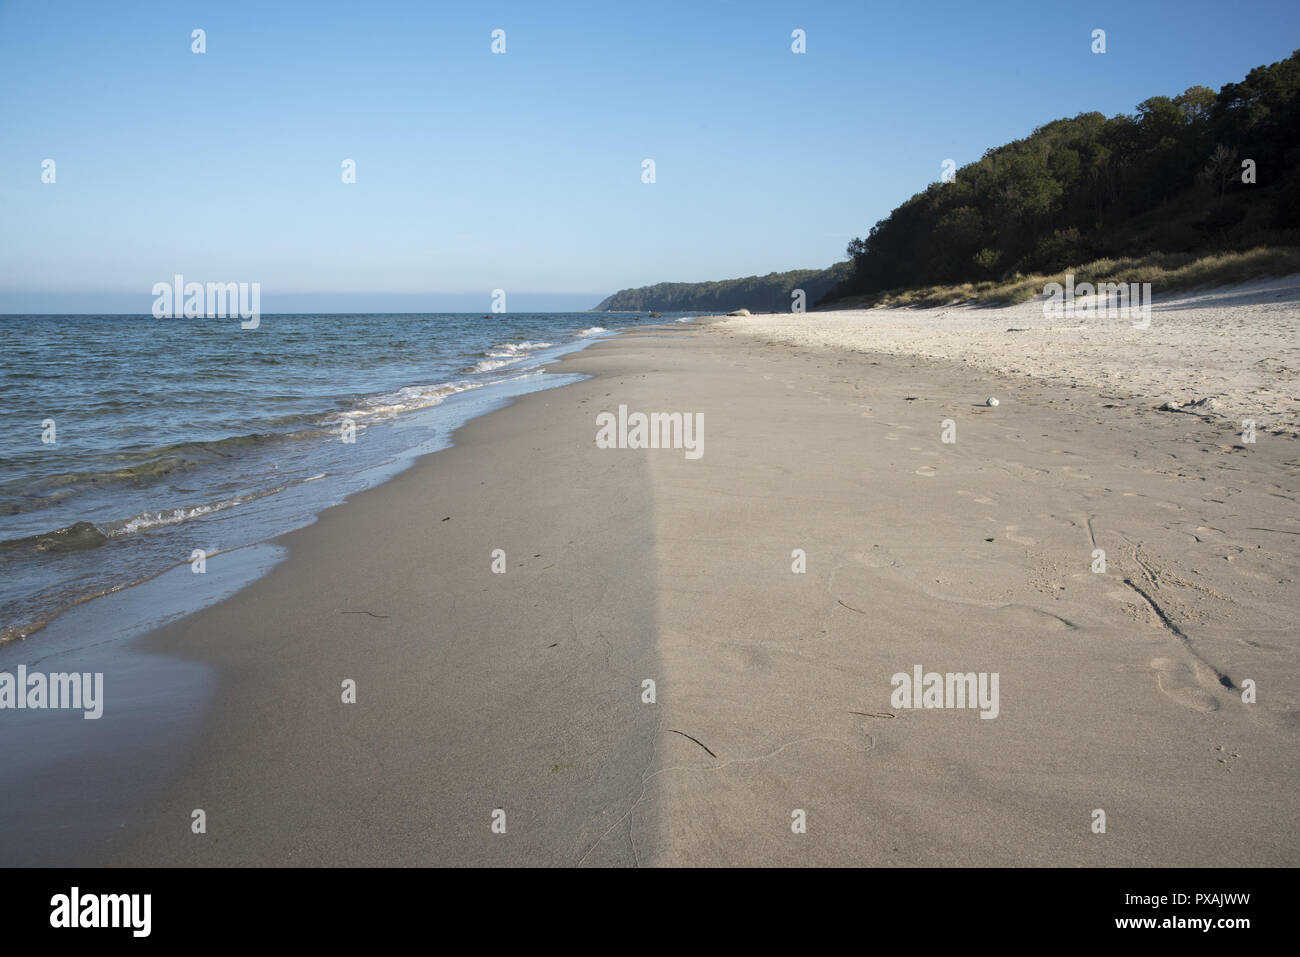 Un sable appelé Nordstrand en face d'une côte escarpée mène de l'ouest à l'Gellort appelé extrême nord de l'île de Rügen en Allemagne. Banque D'Images